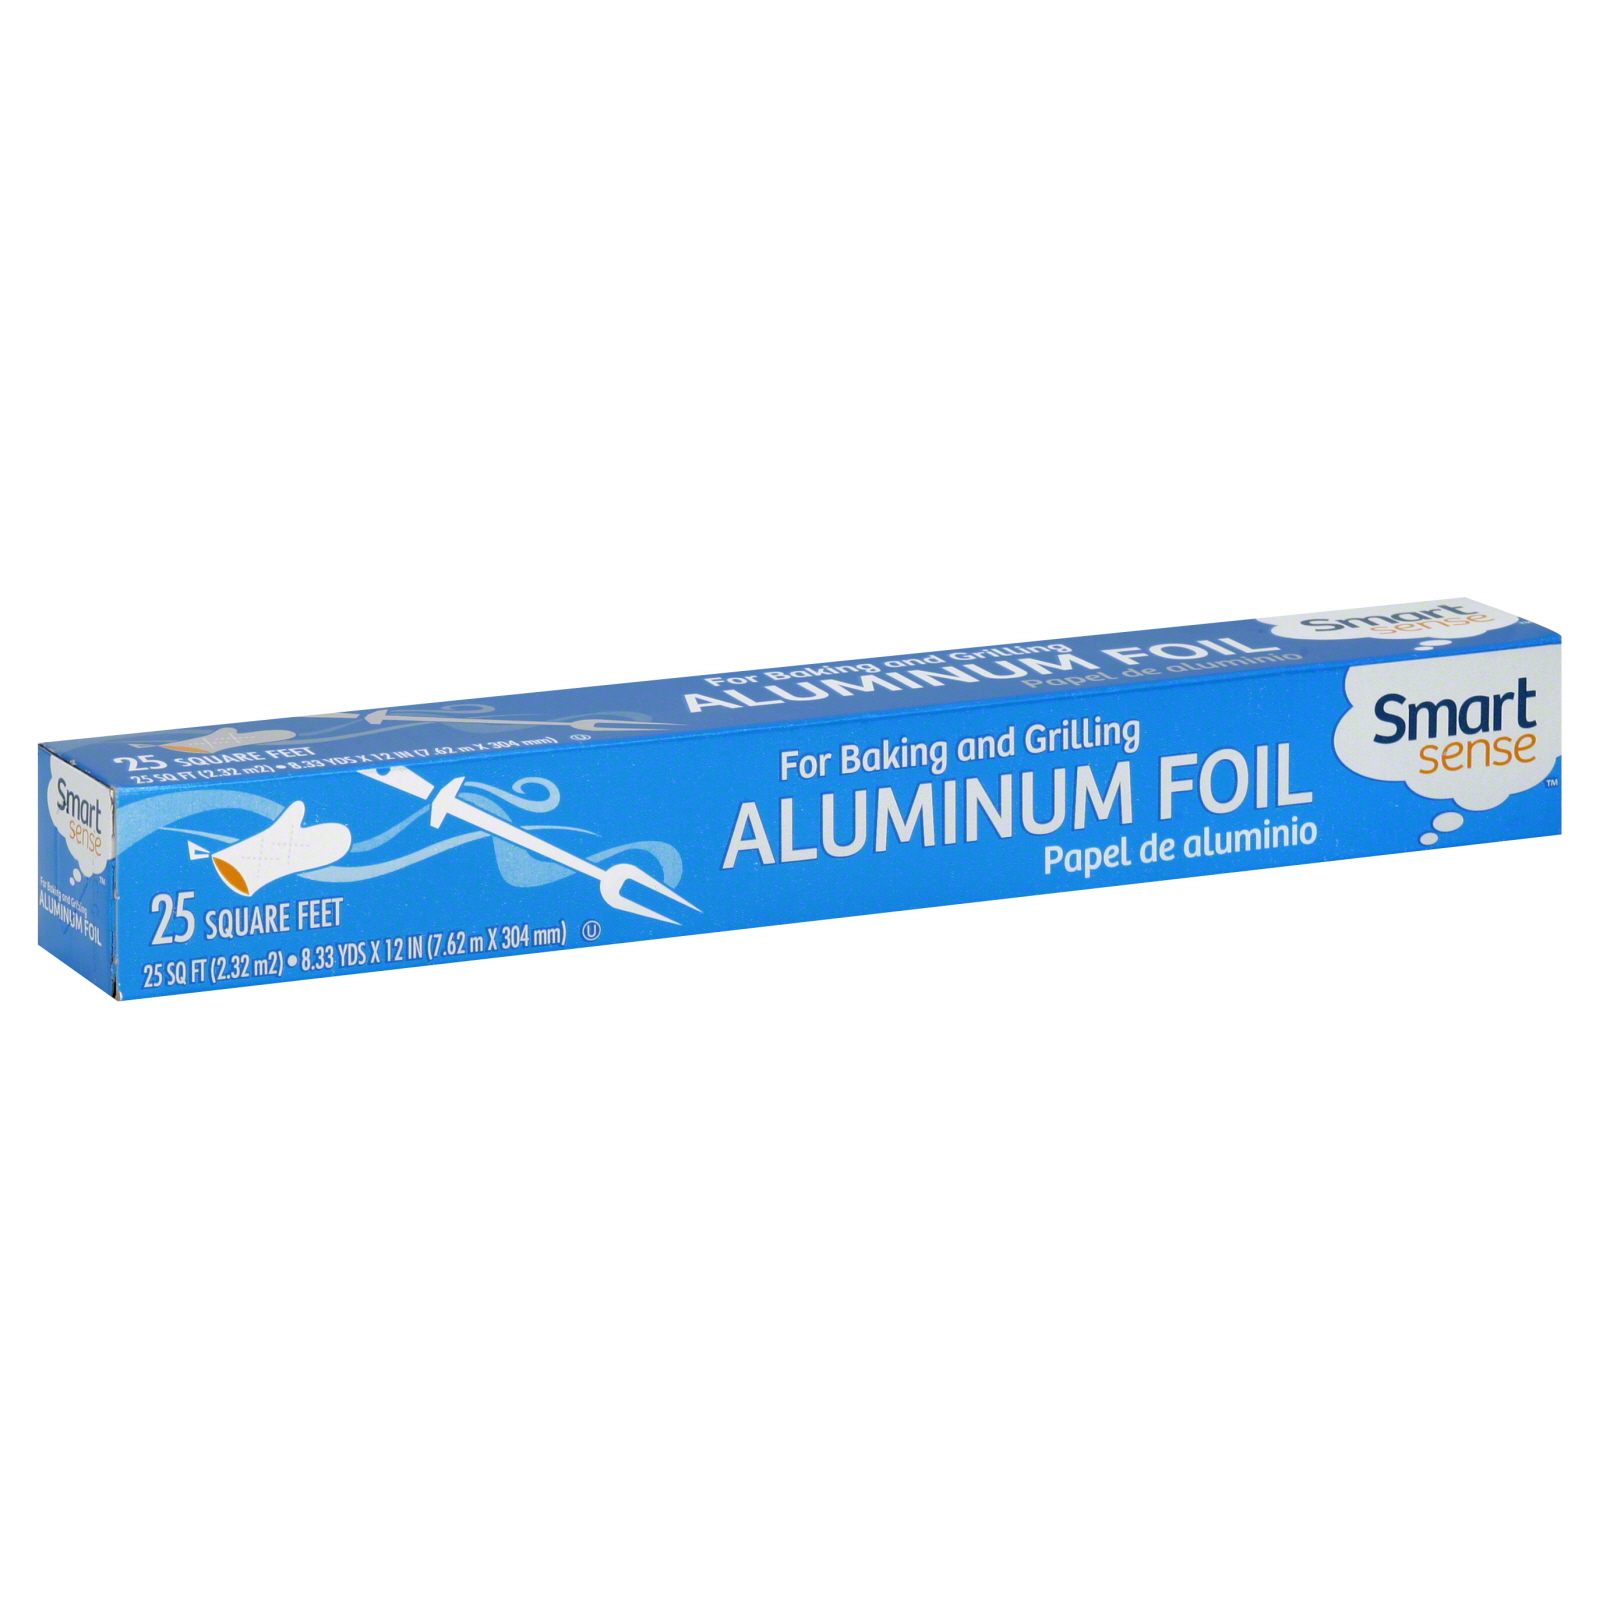 Aluminum Foil, 25 Sq Ft, 1 roll